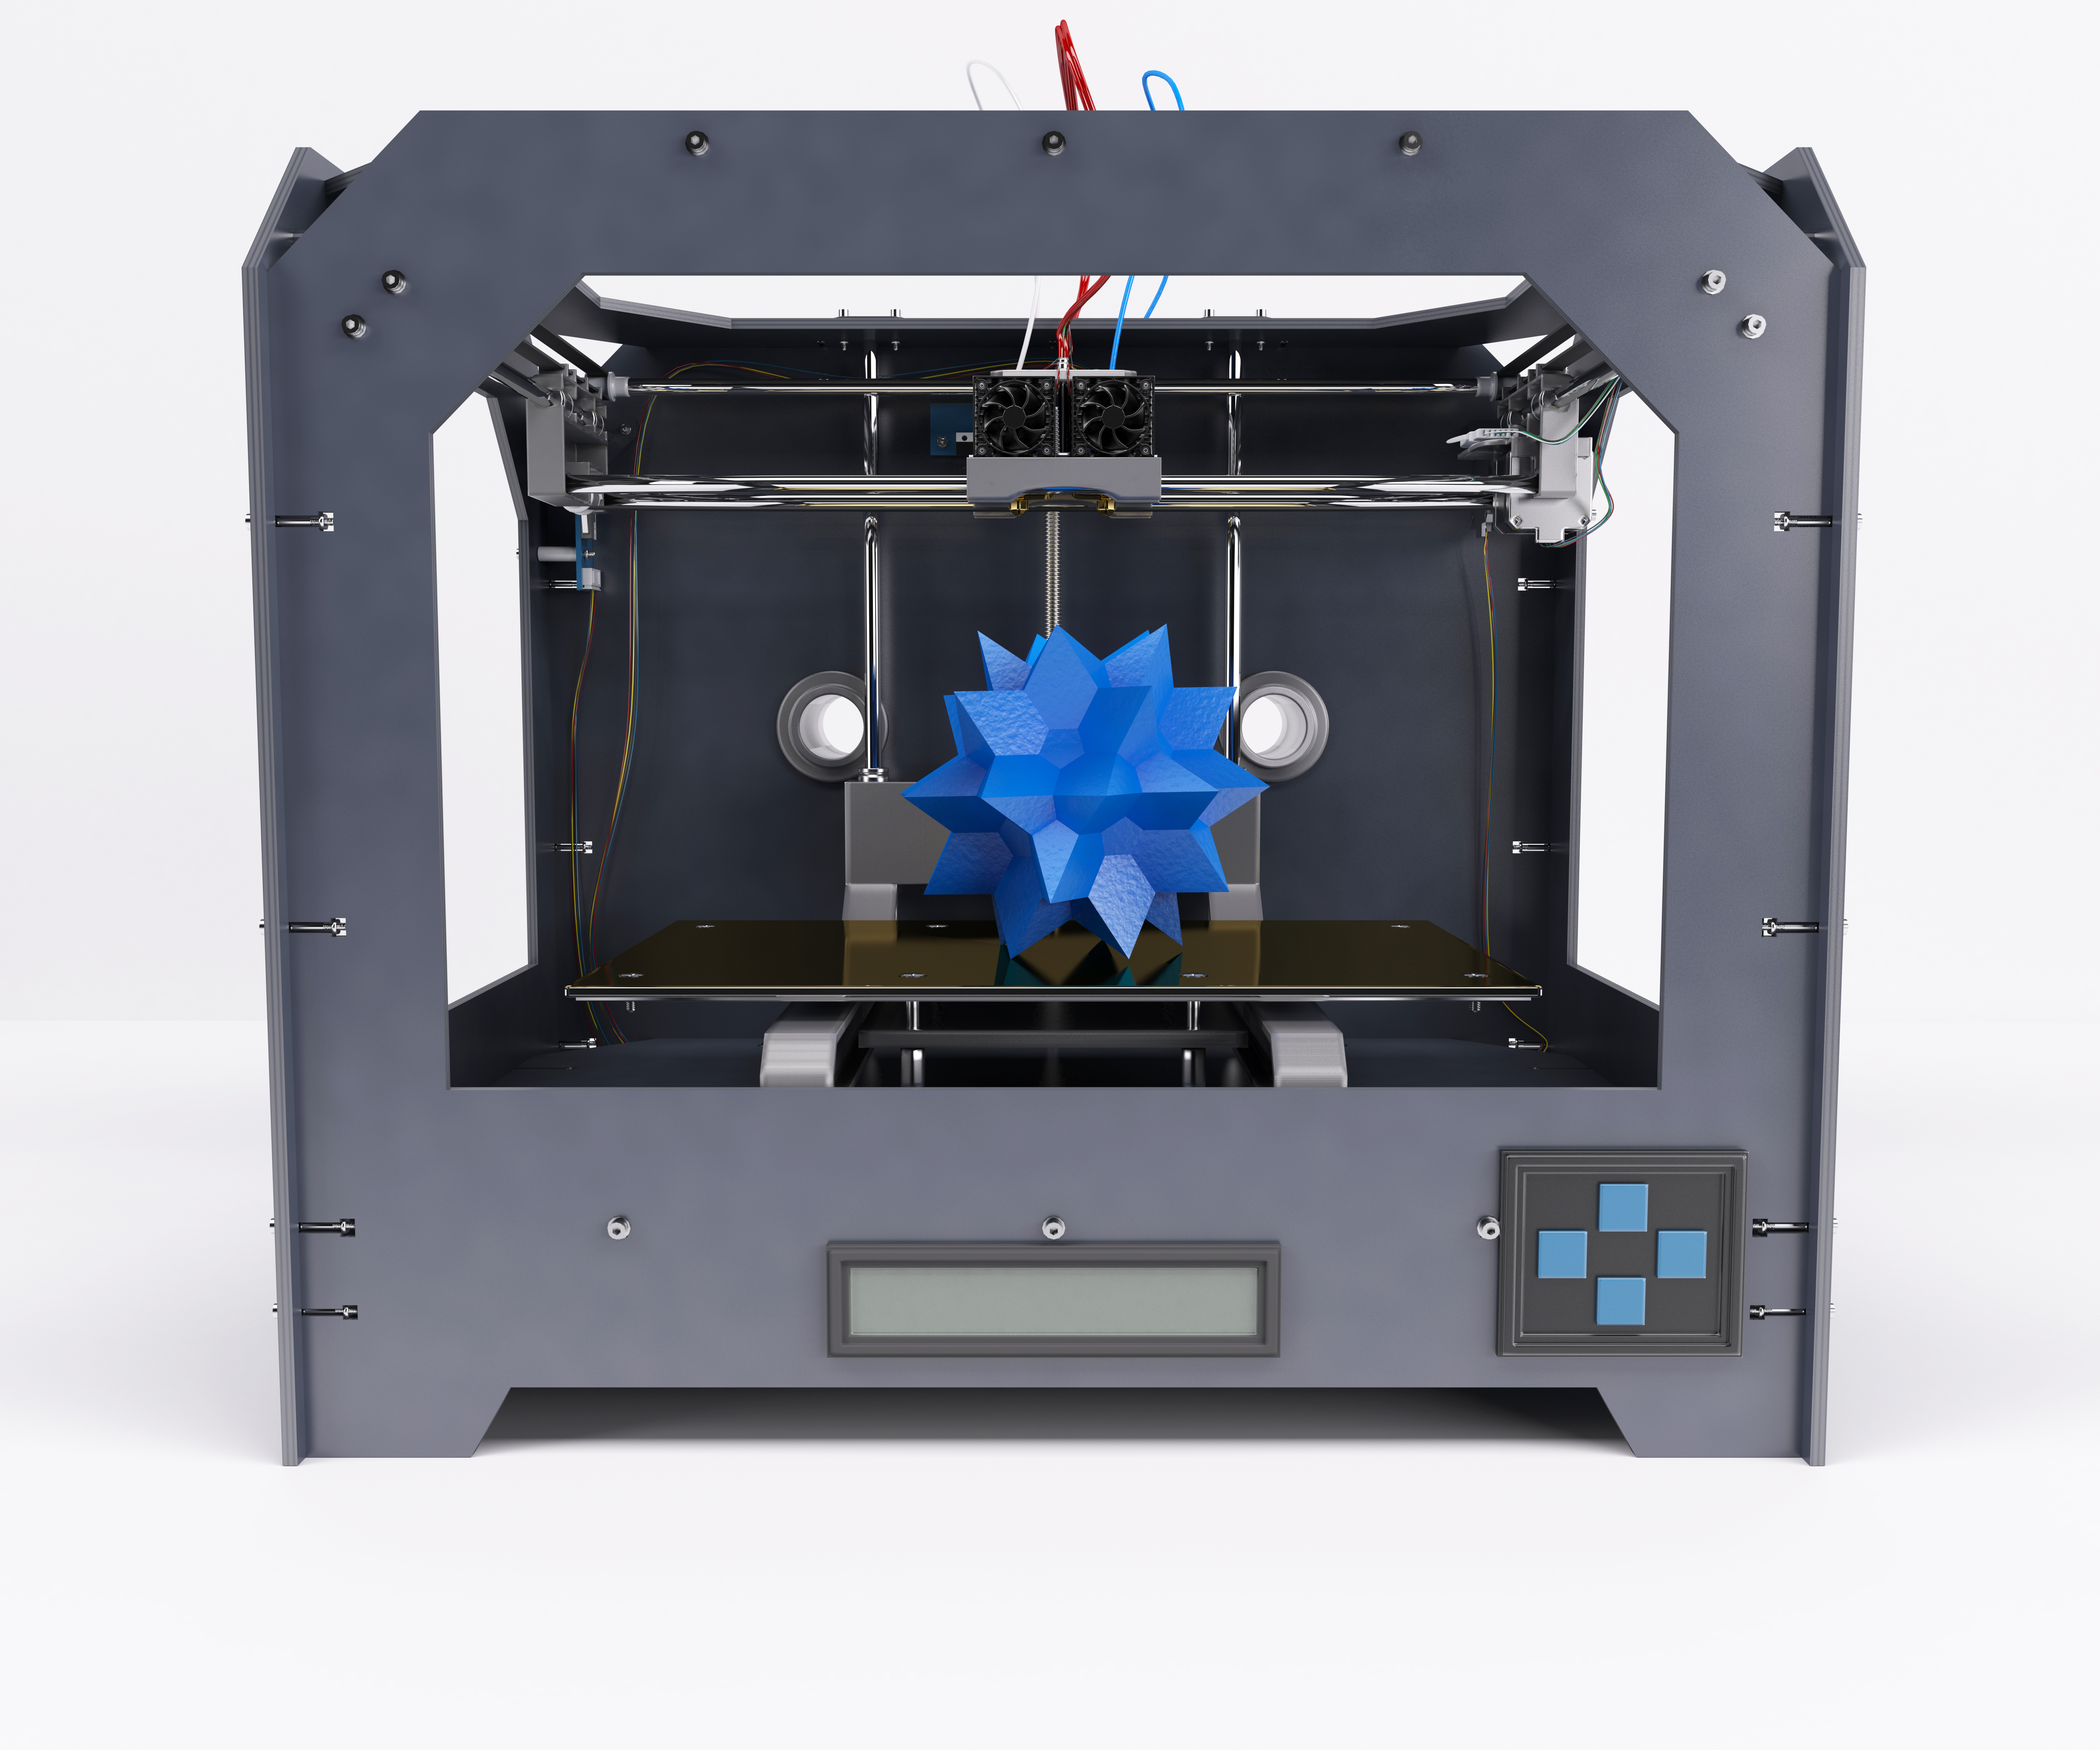 impresora 3d imprimiendo una estrella poligonal